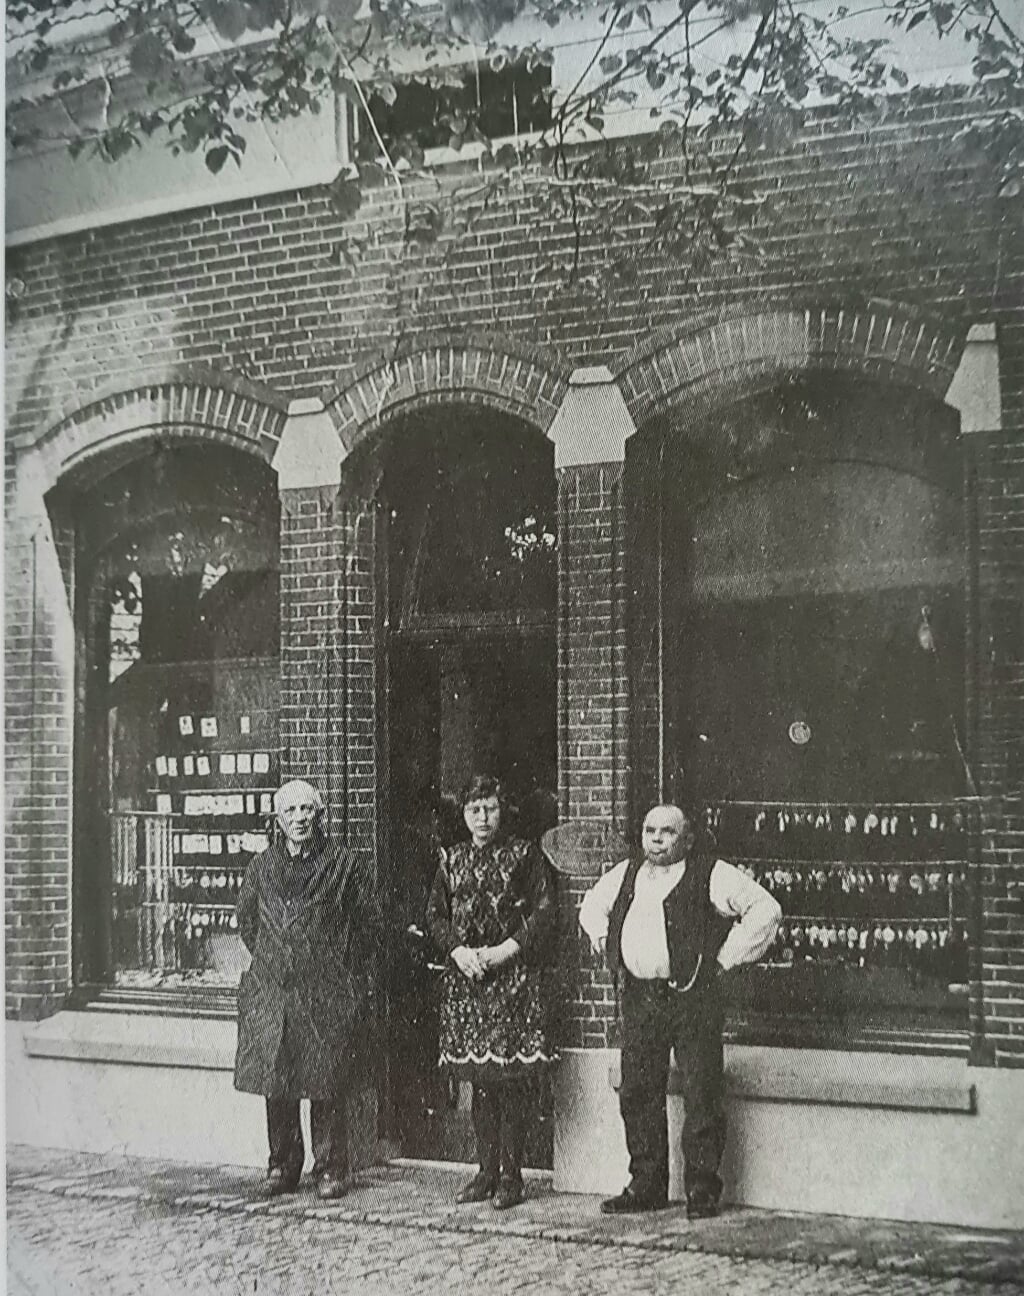 V.l.n.r. Jan Winters, Riekske Wissink en Hent Wissink voor de winkel (opticien en juweliers) aan de Spalstraat. Archief Willy Hermans